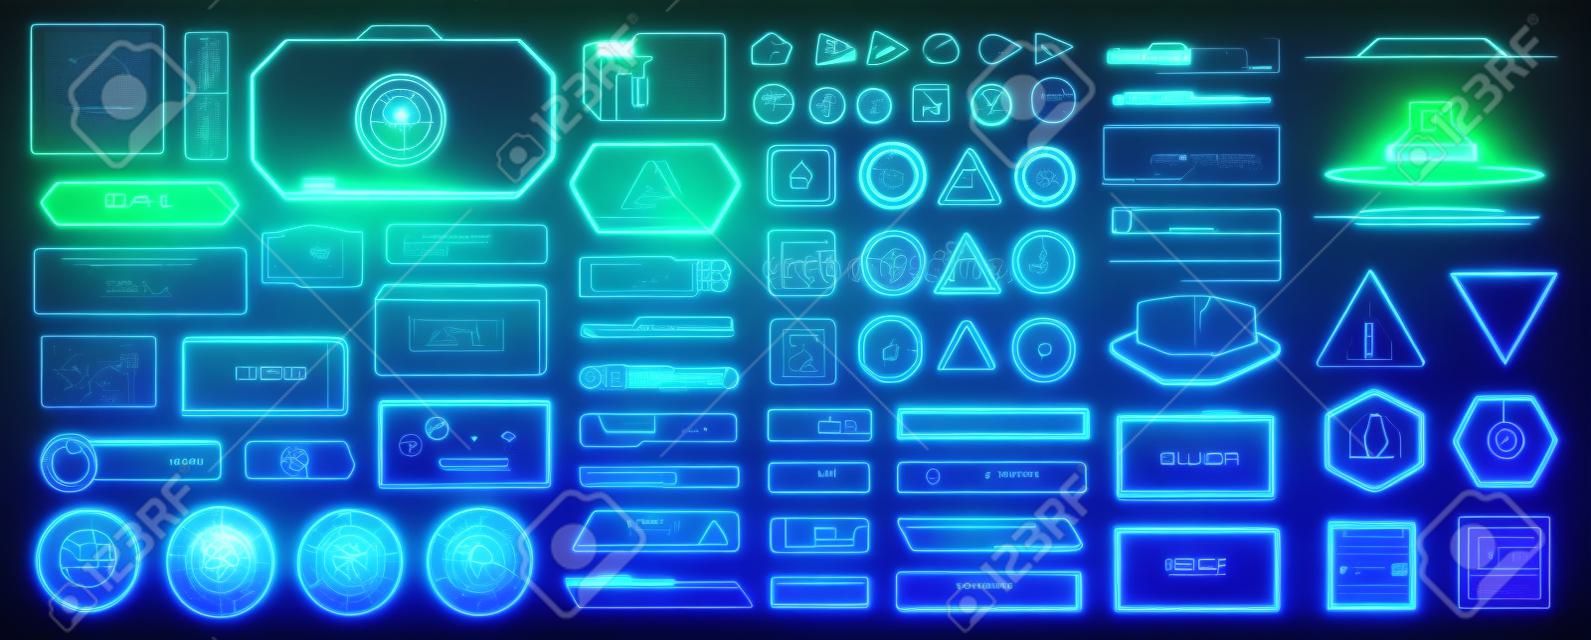 Éléments de science-fiction. élément scientifique futuriste d'écran hud, tableau de cadre d'hologramme méga tech panneau d'interface utilisateur de contrôle d'interface numérique pour moniteur de jeu cyberpunk vr, illustration vectorielle criarde